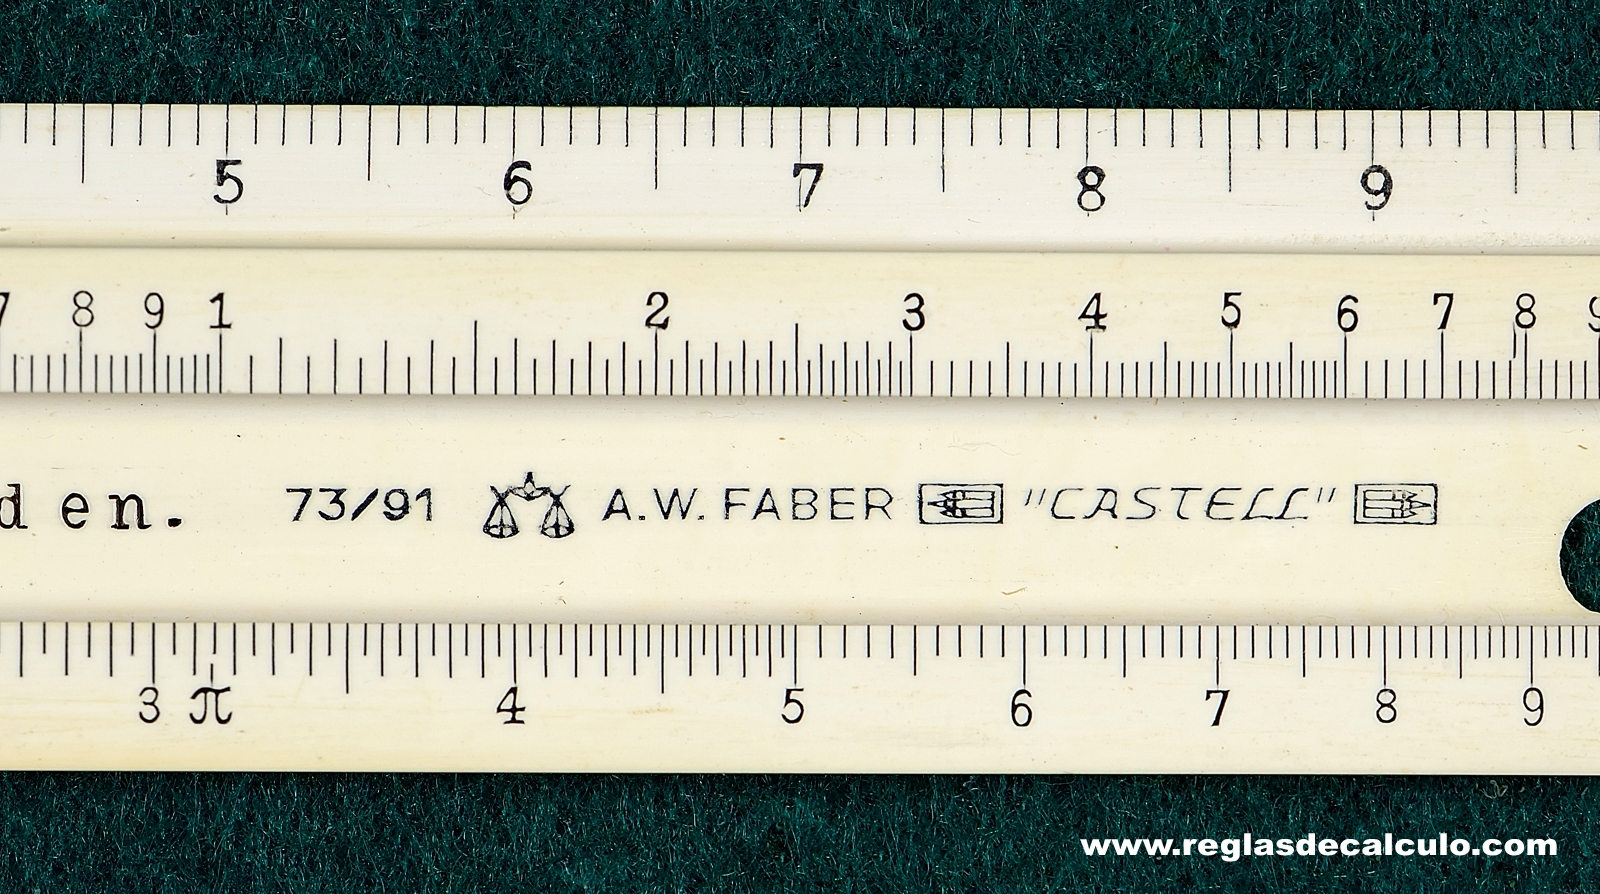 Faber Castell 73/91 Regla de Calculo Slide rule